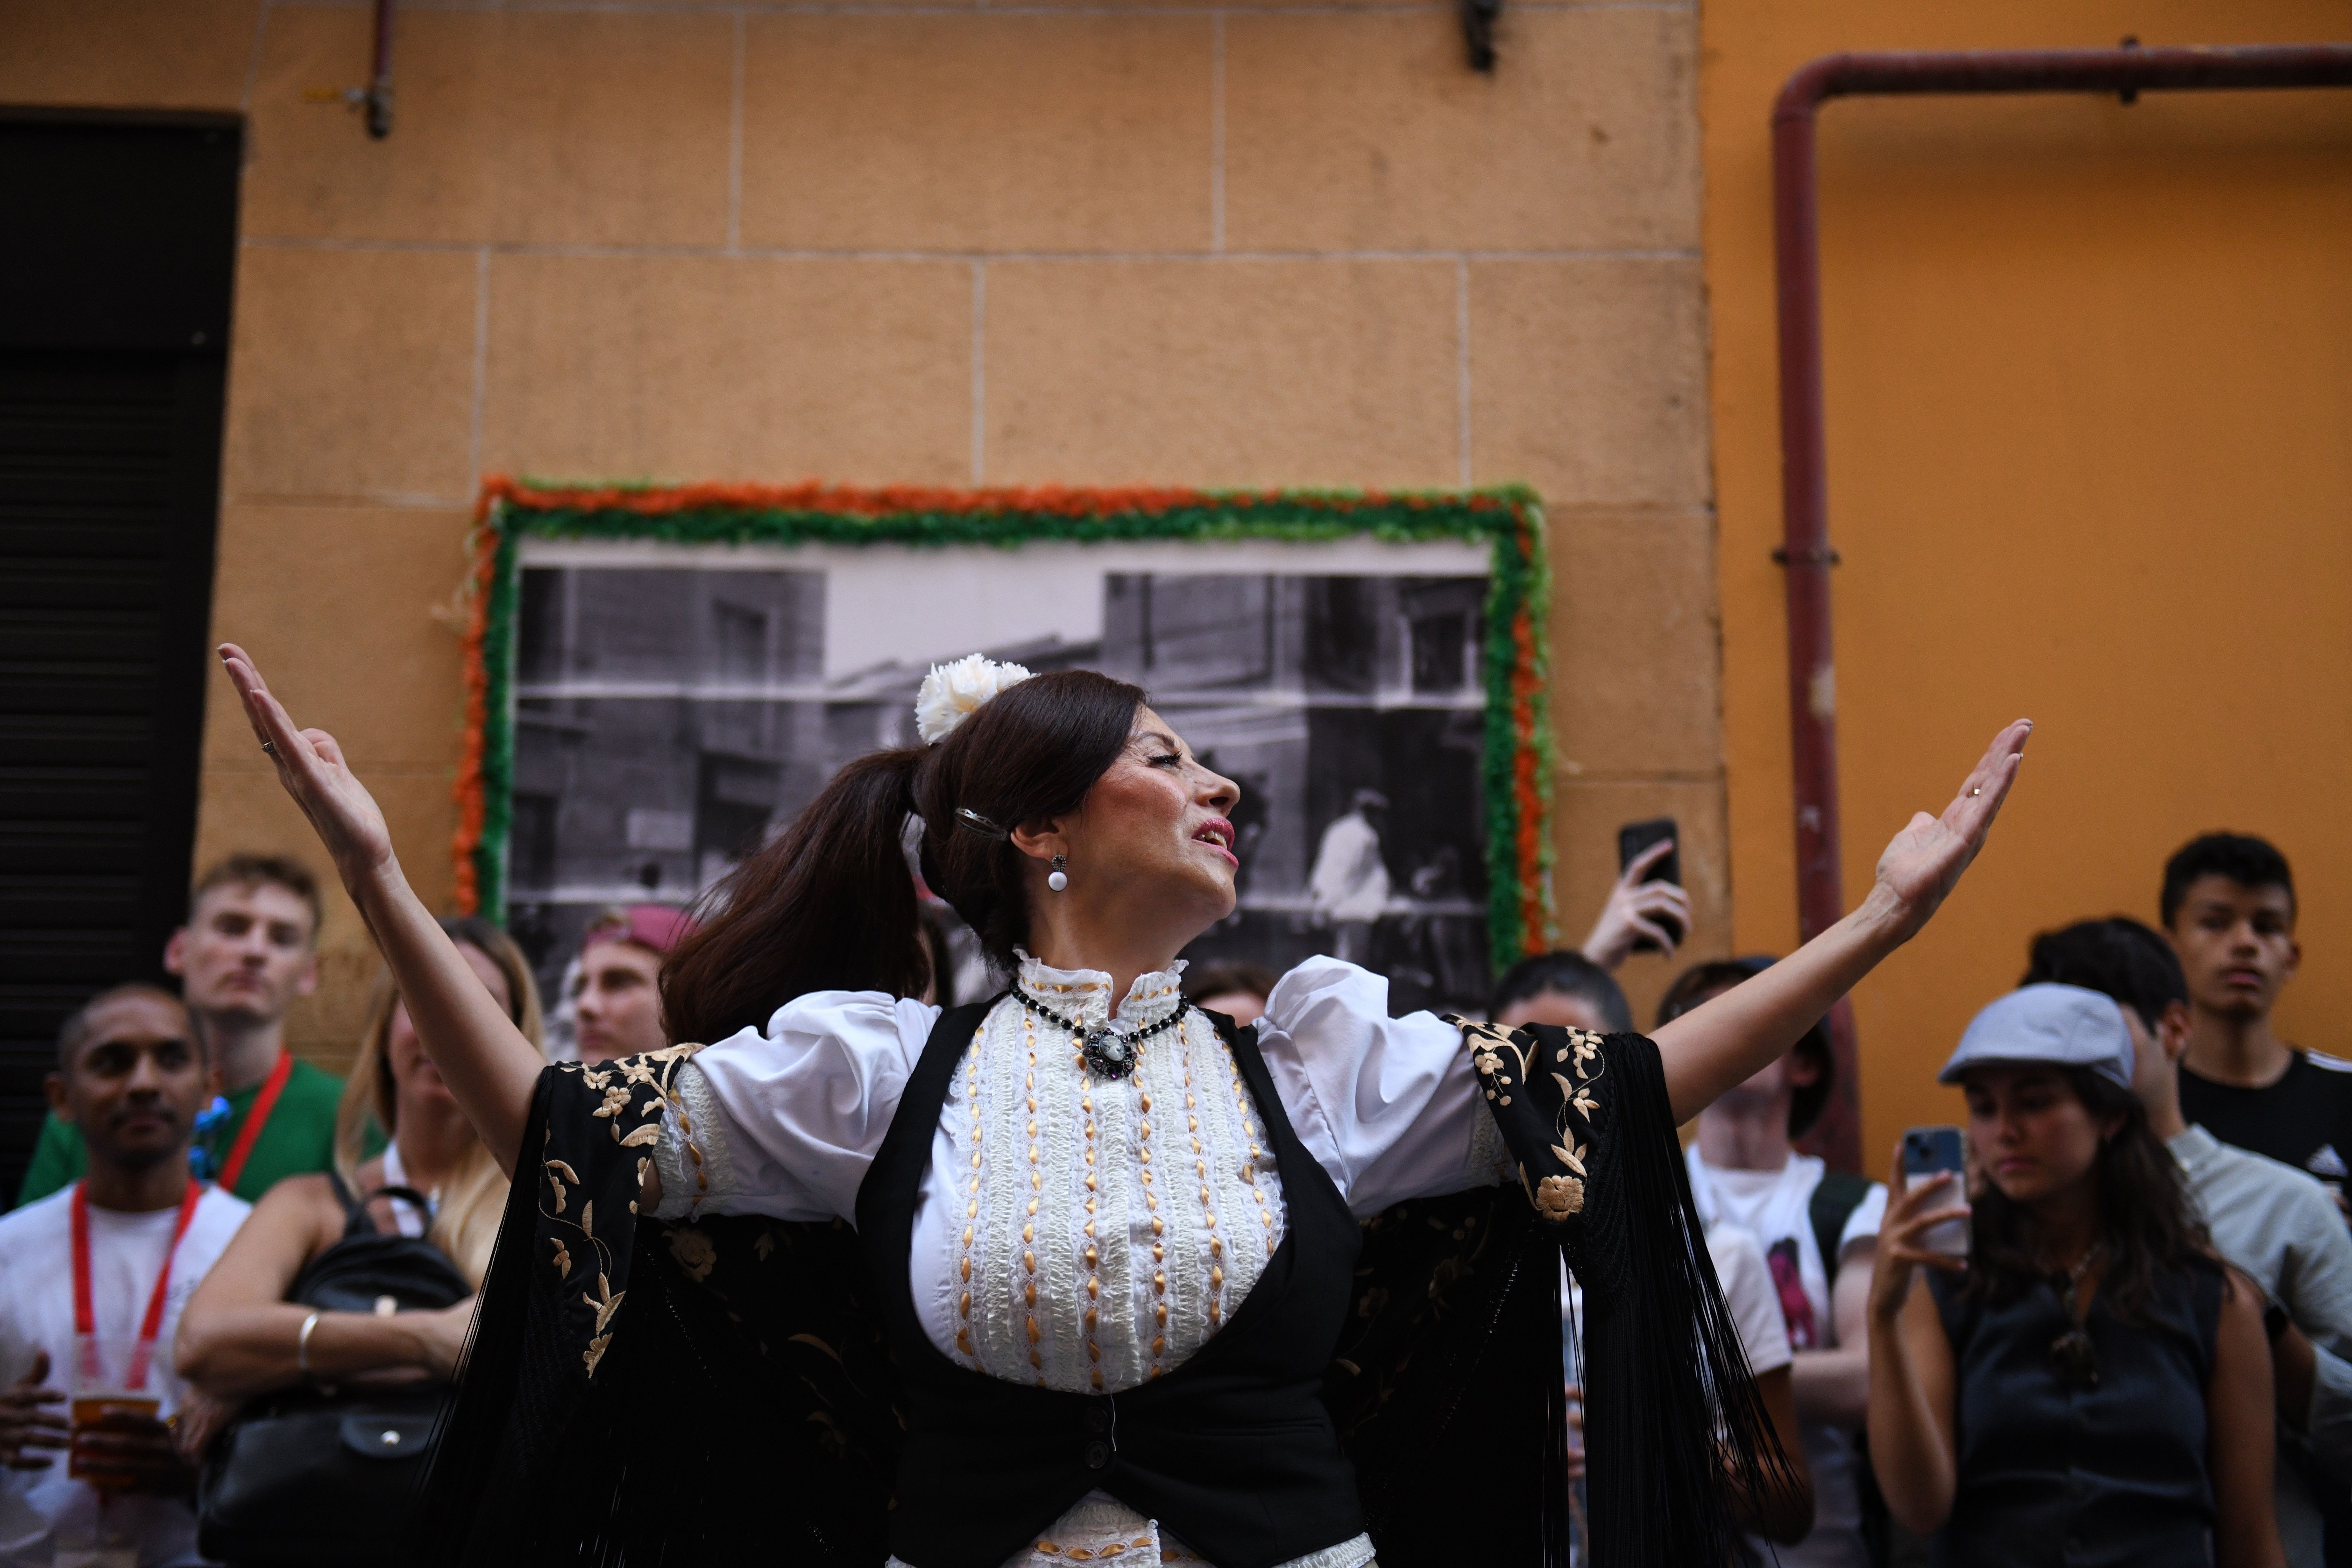 Música, torneos y propuestas lúdicas protagonizarán las Fiestas de San Lorenzo y La Paloma. Foto: Europa Press